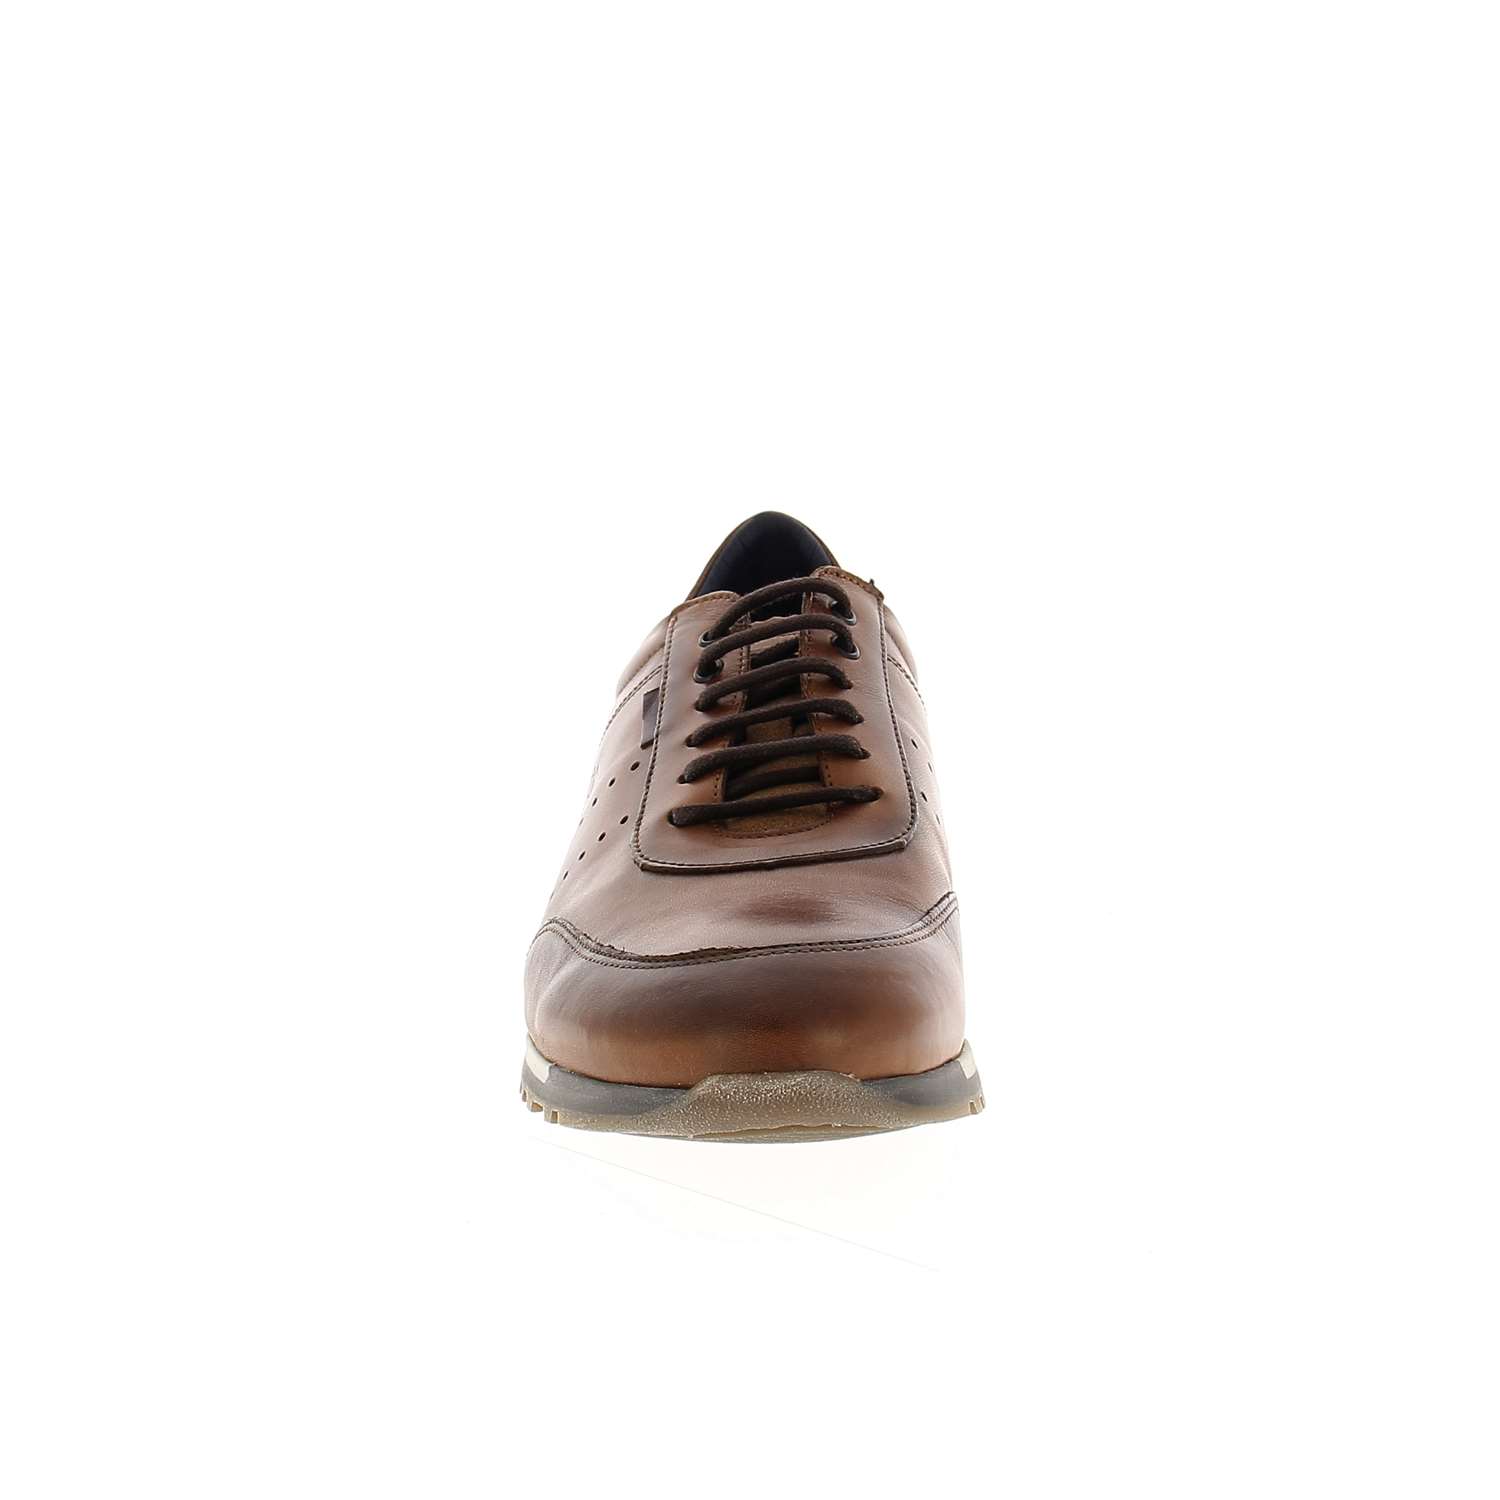 03 - SANDER - FLUCHOS - Chaussures à lacets - Cuir